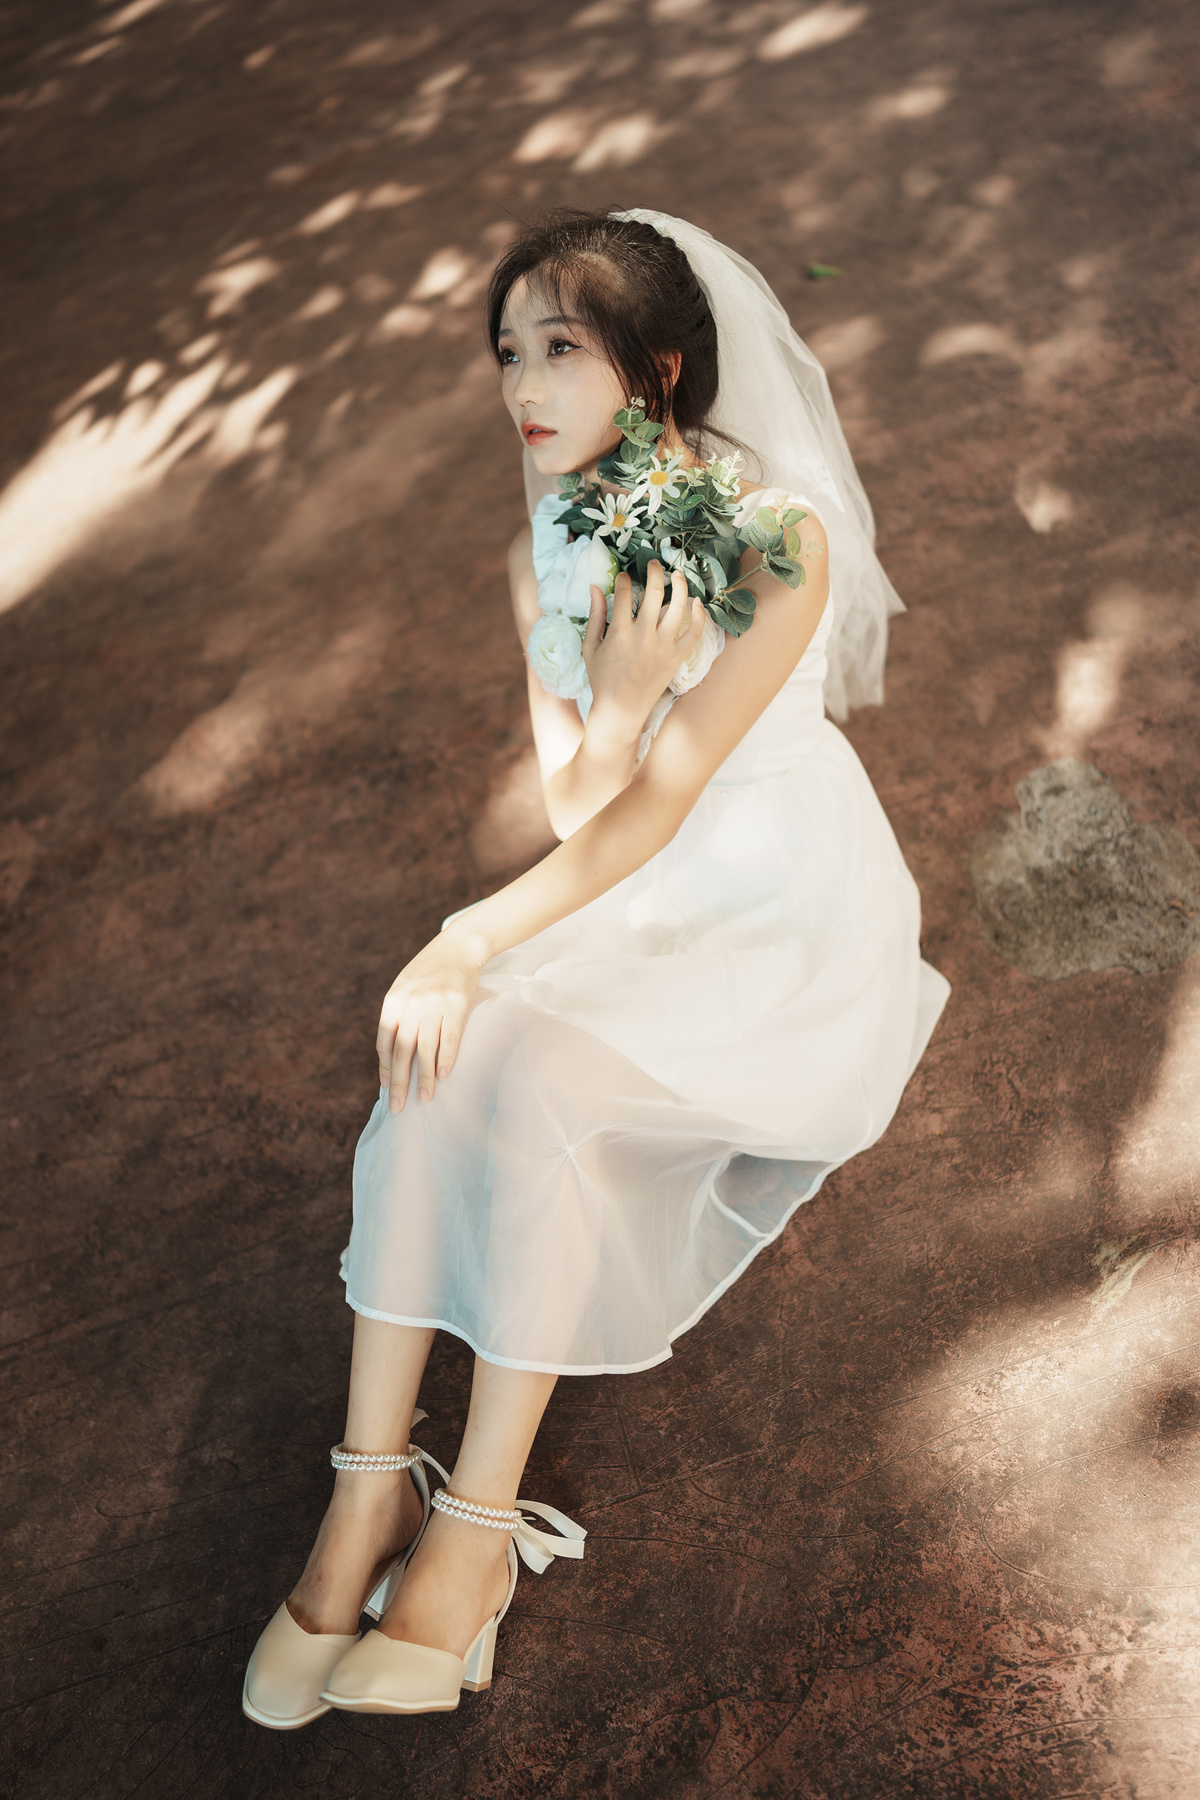 一位穿着白色连衣裙和白色鞋子的年轻女子抱着花坐在树下。